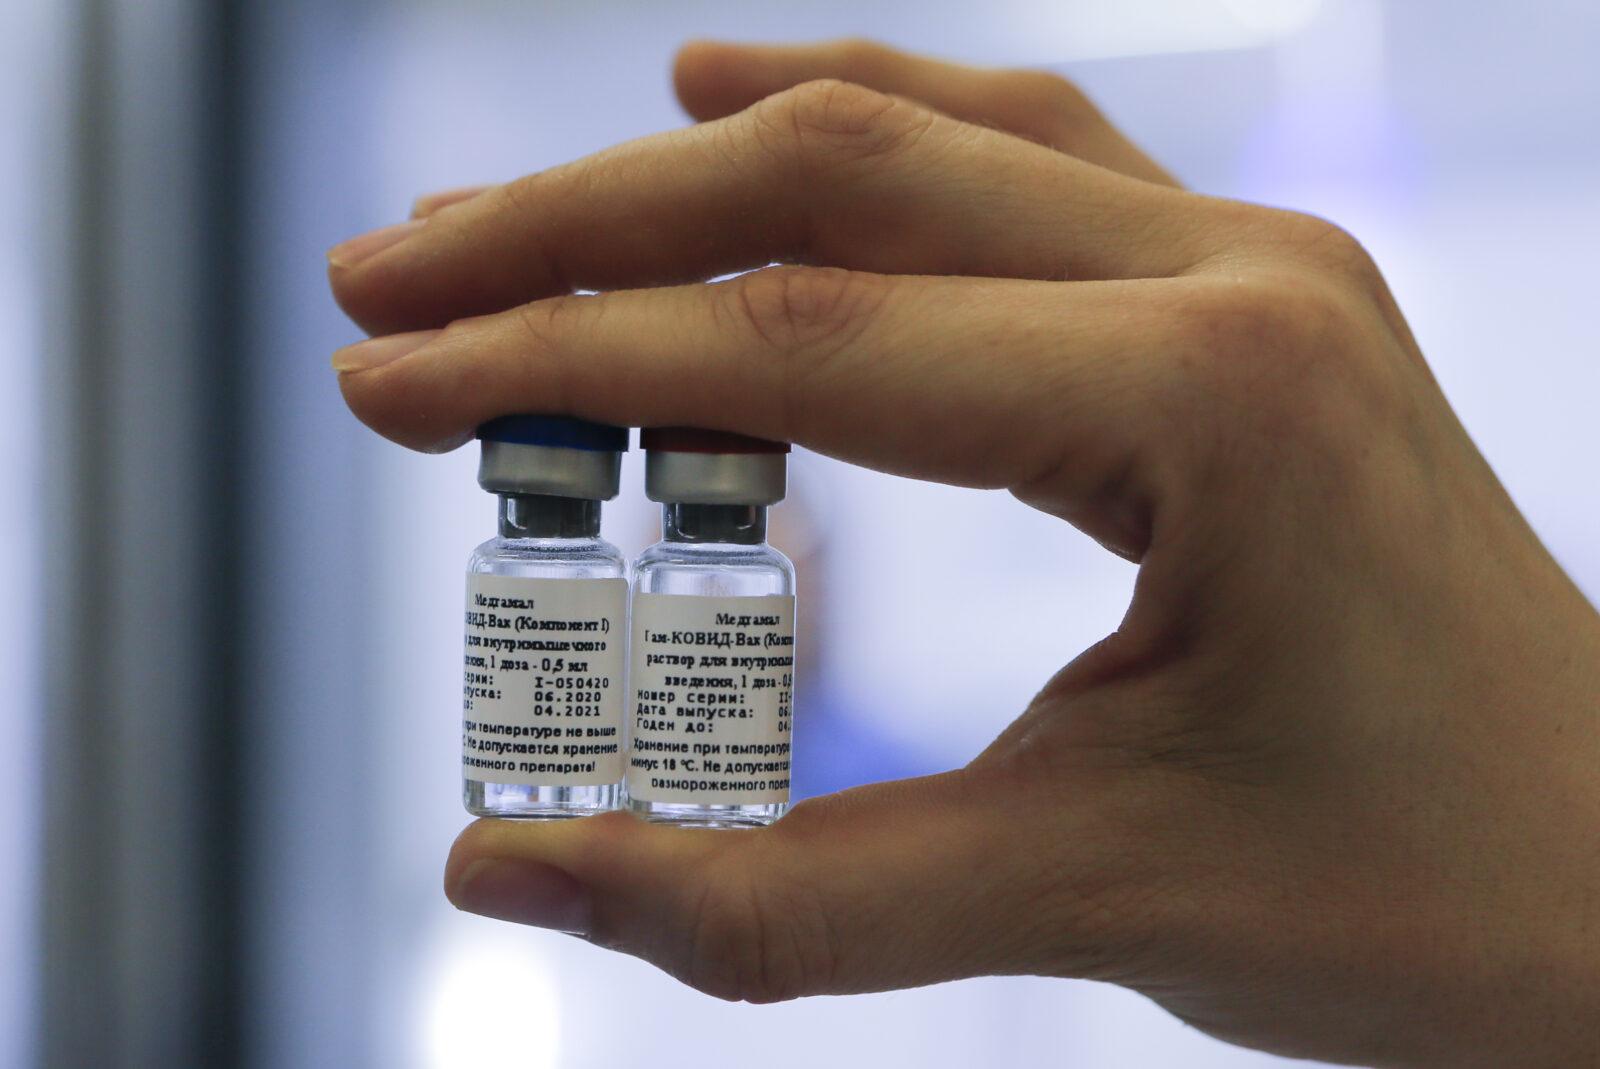 Сотрудники посольства США попросили прививку «Спутник V» из-за нехватки вакцины – СМИ